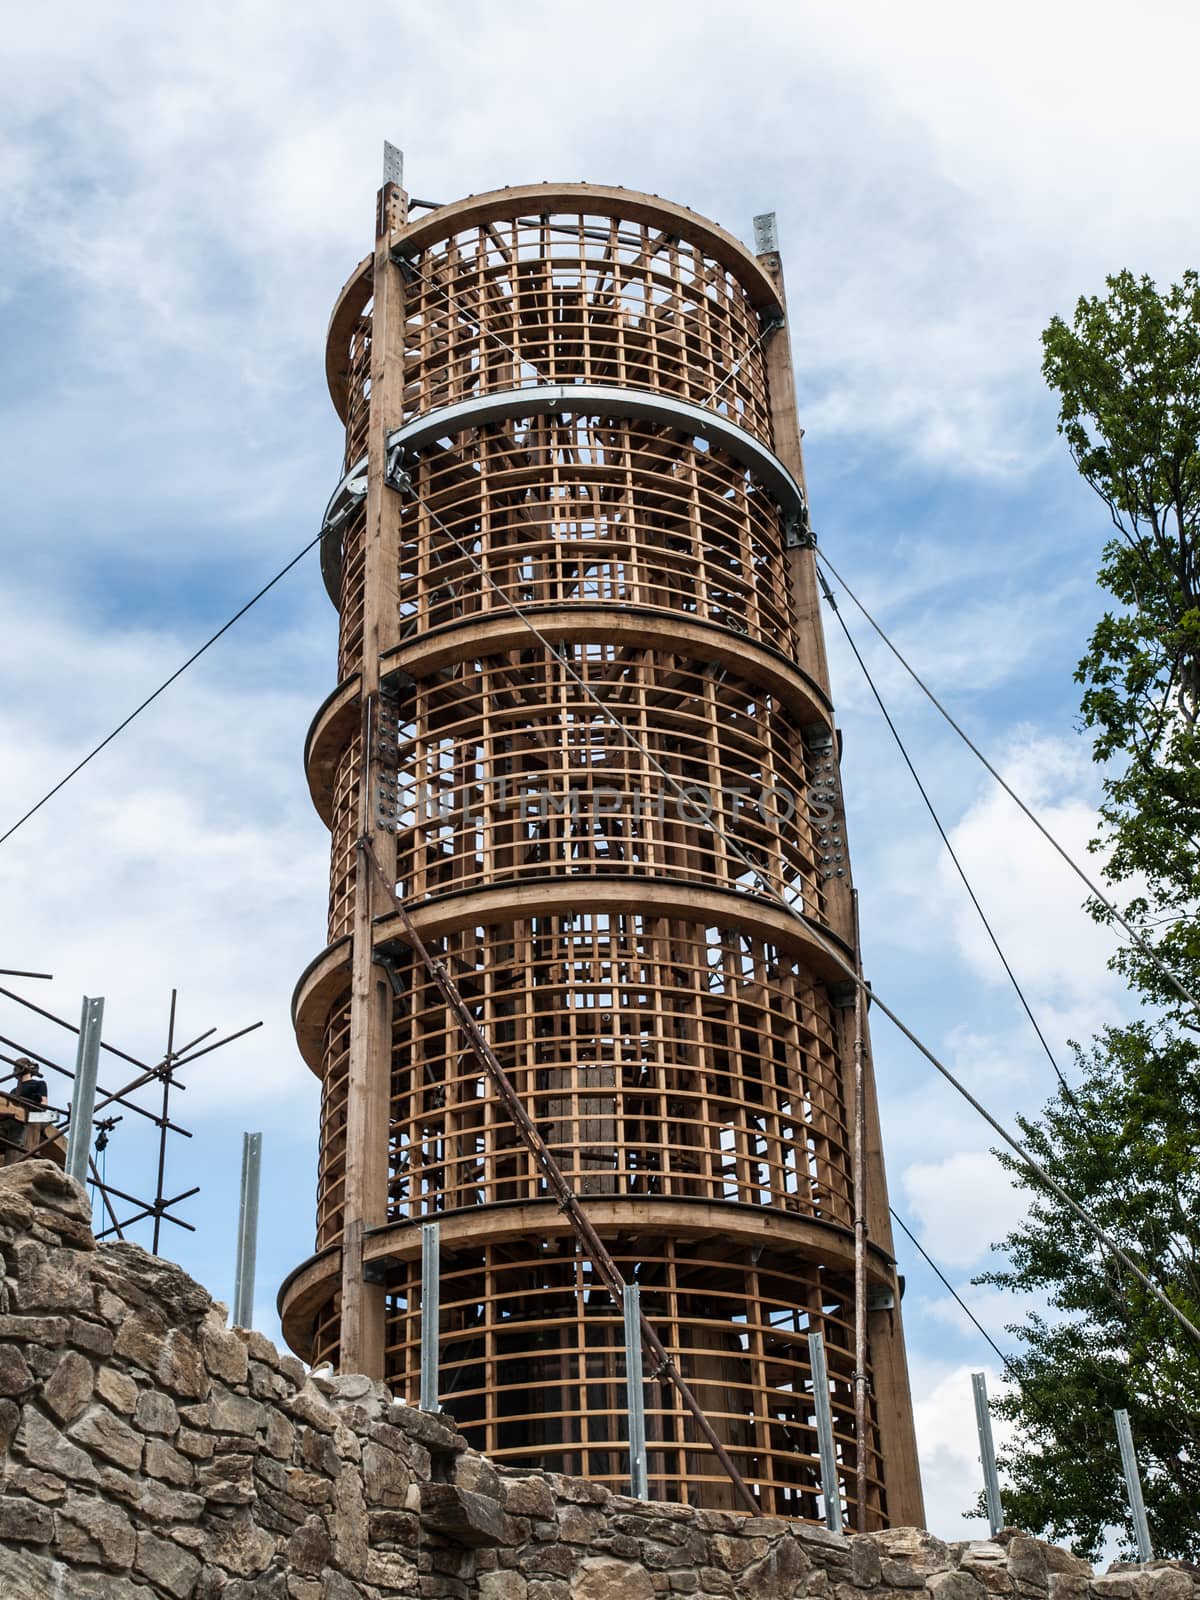 Wooden lighthouse under construction (Korenov, Czech Republic)